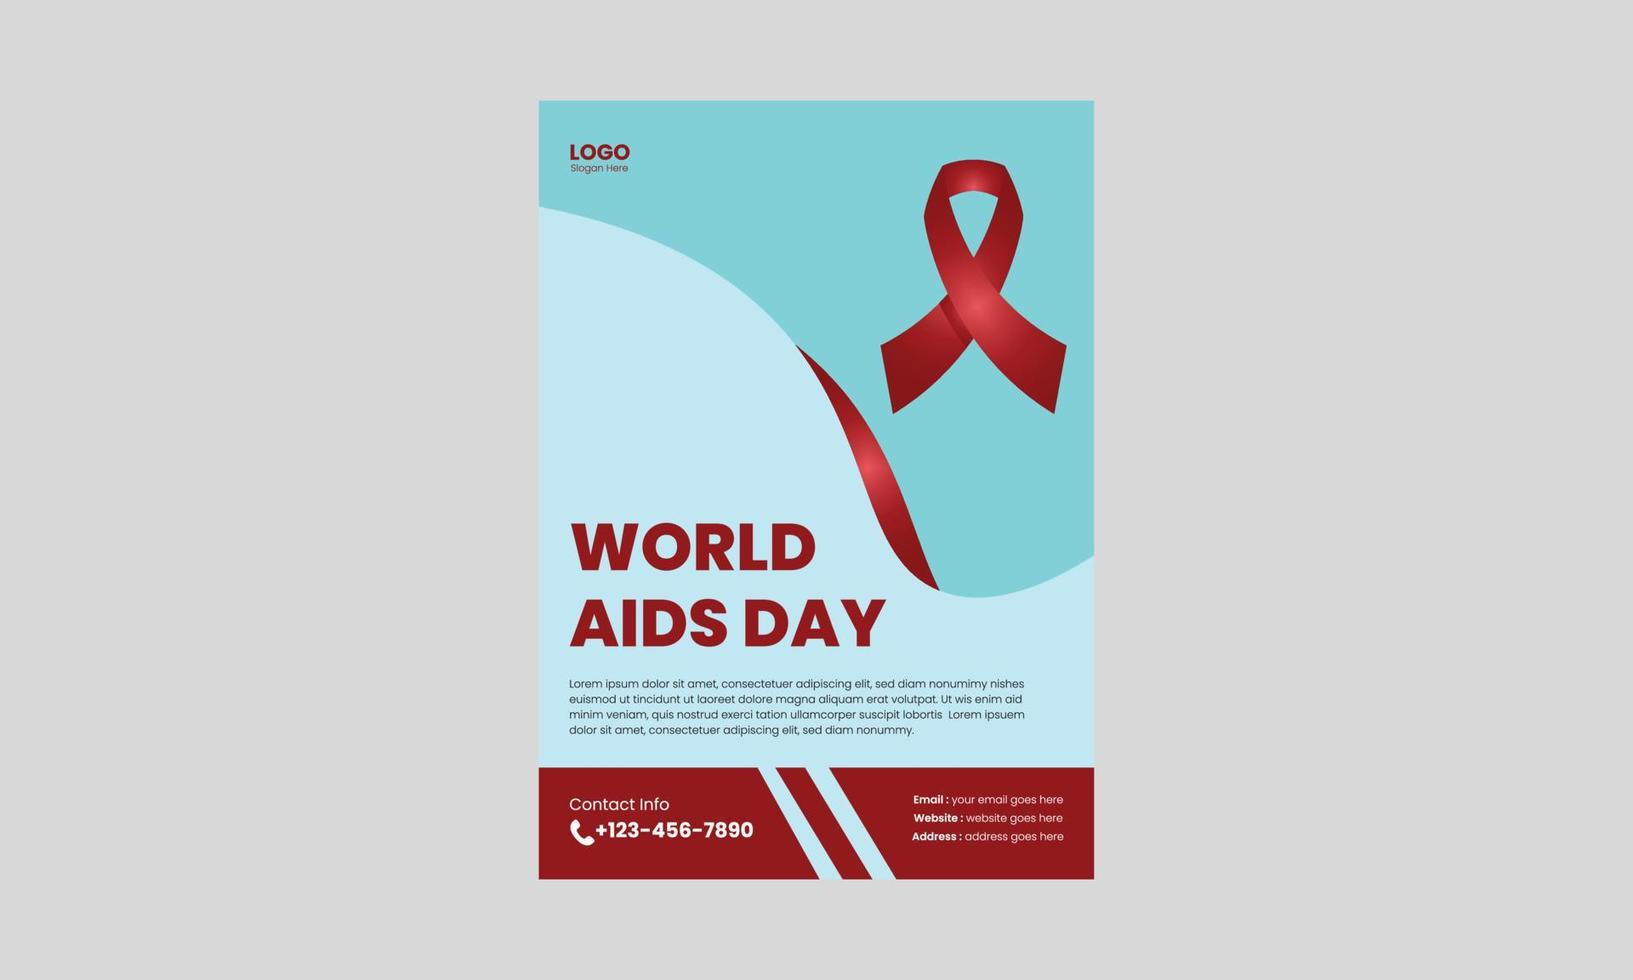 welt-aids-tag oder hiv-virus-poster oder flyer-design-vorlage. flyerdesign zur hiv- oder aids-prävention. Cover, Poster, A4-Format, Flyer-Design vektor